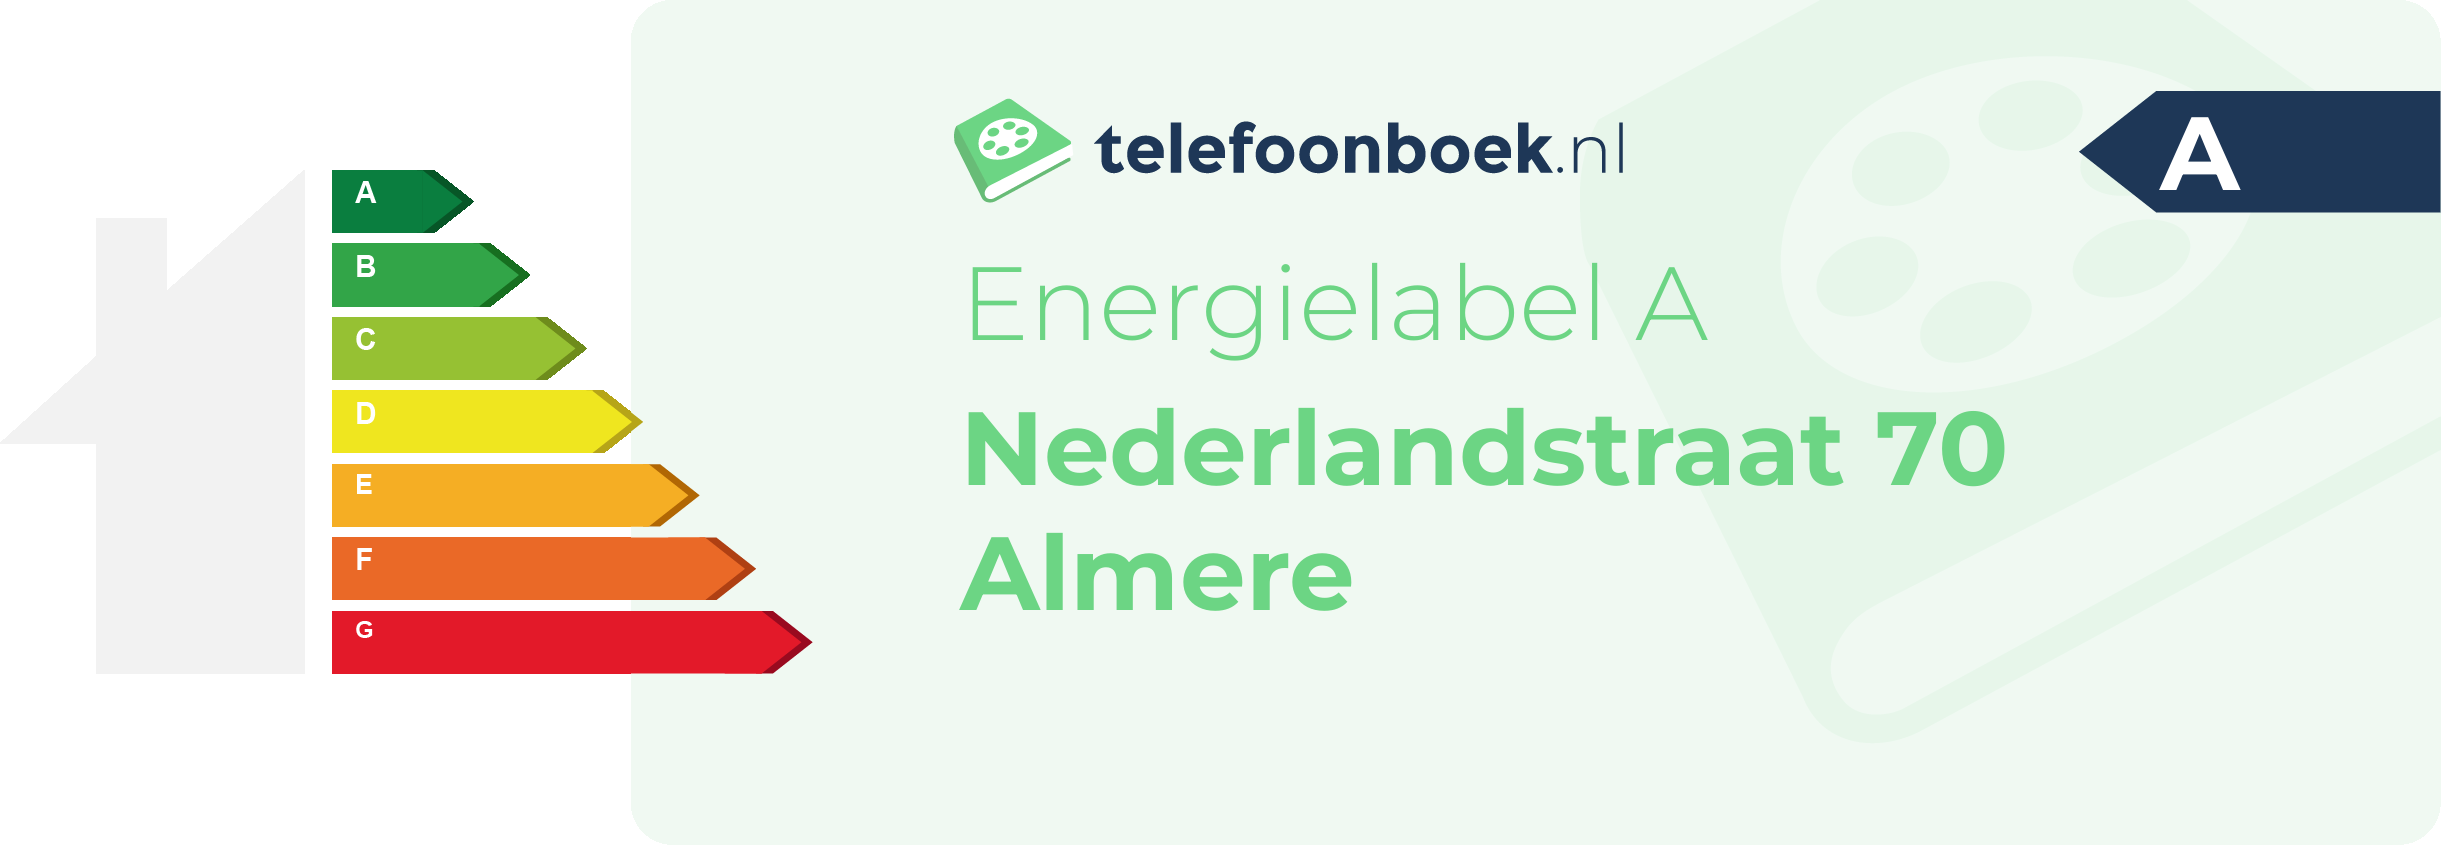 Energielabel Nederlandstraat 70 Almere